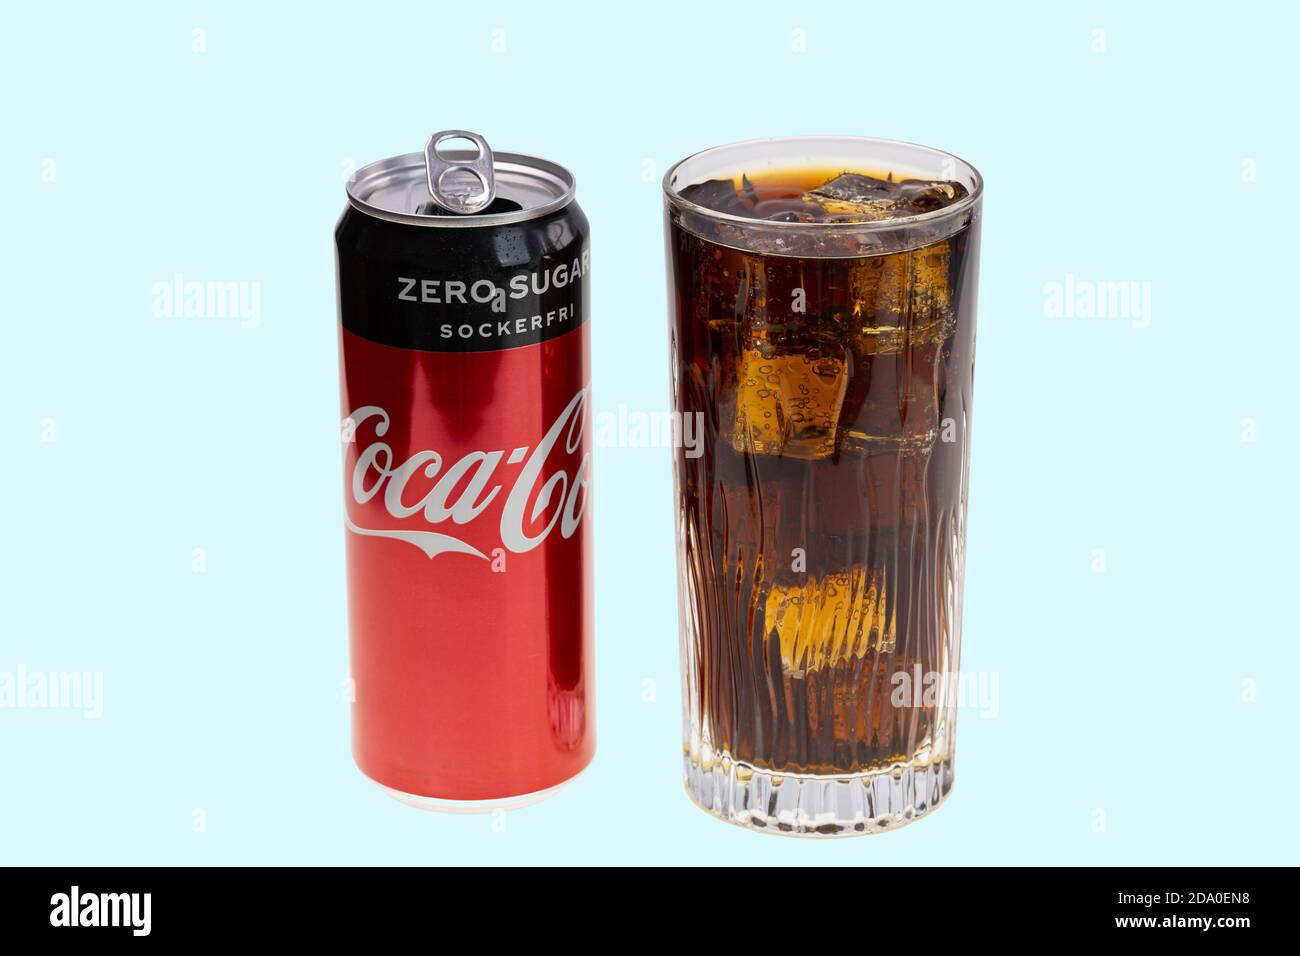 Vue sur la canette à coca ouverte et soda avec glace en verre cristal.  Concept des boissons. Concept de santé Photo Stock - Alamy